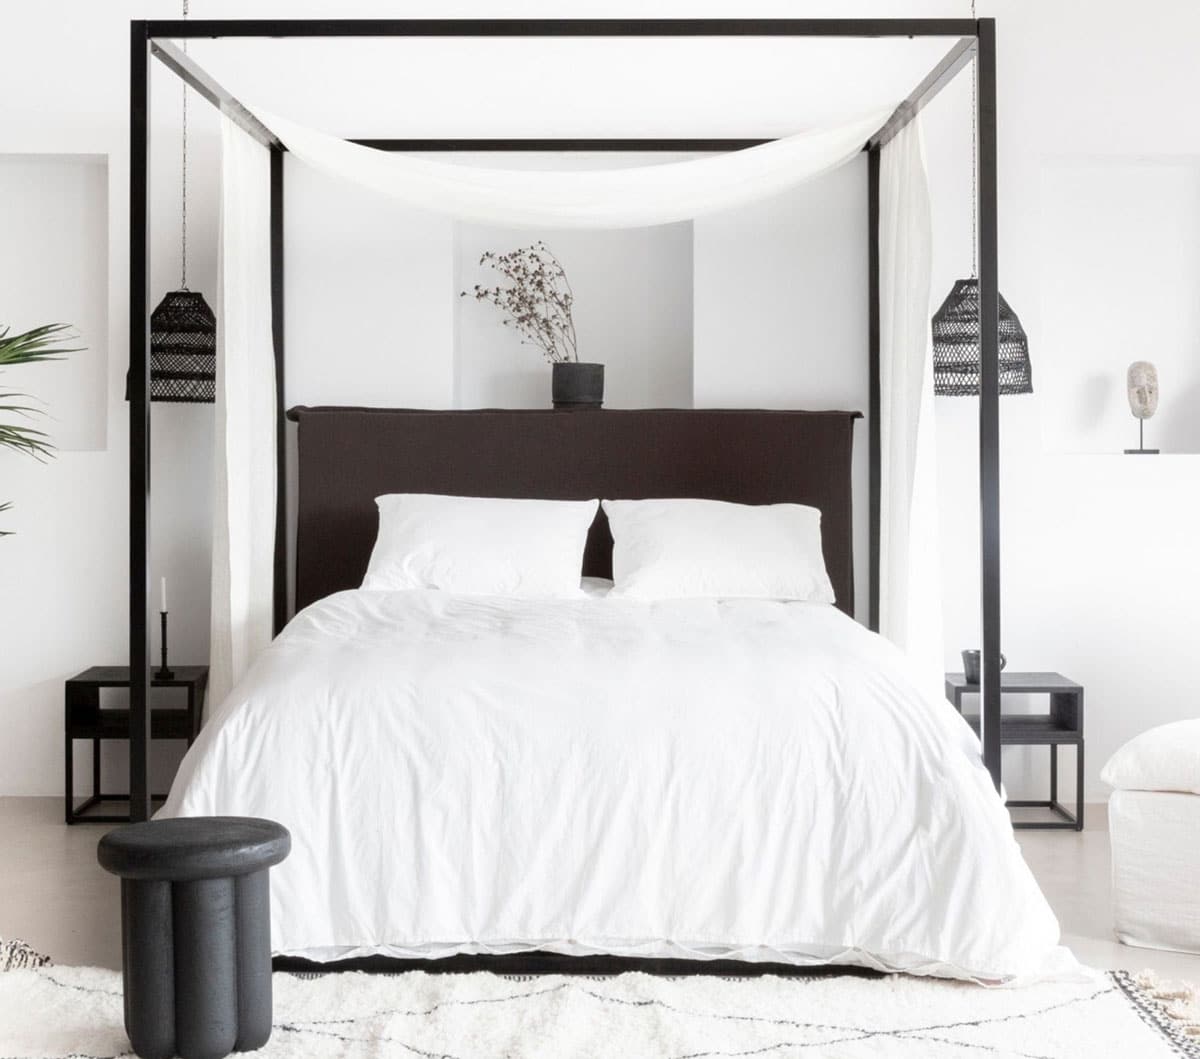 Mur blanc et mobilier noir créent l'équilibre parfait dans cette chambre au style épuré